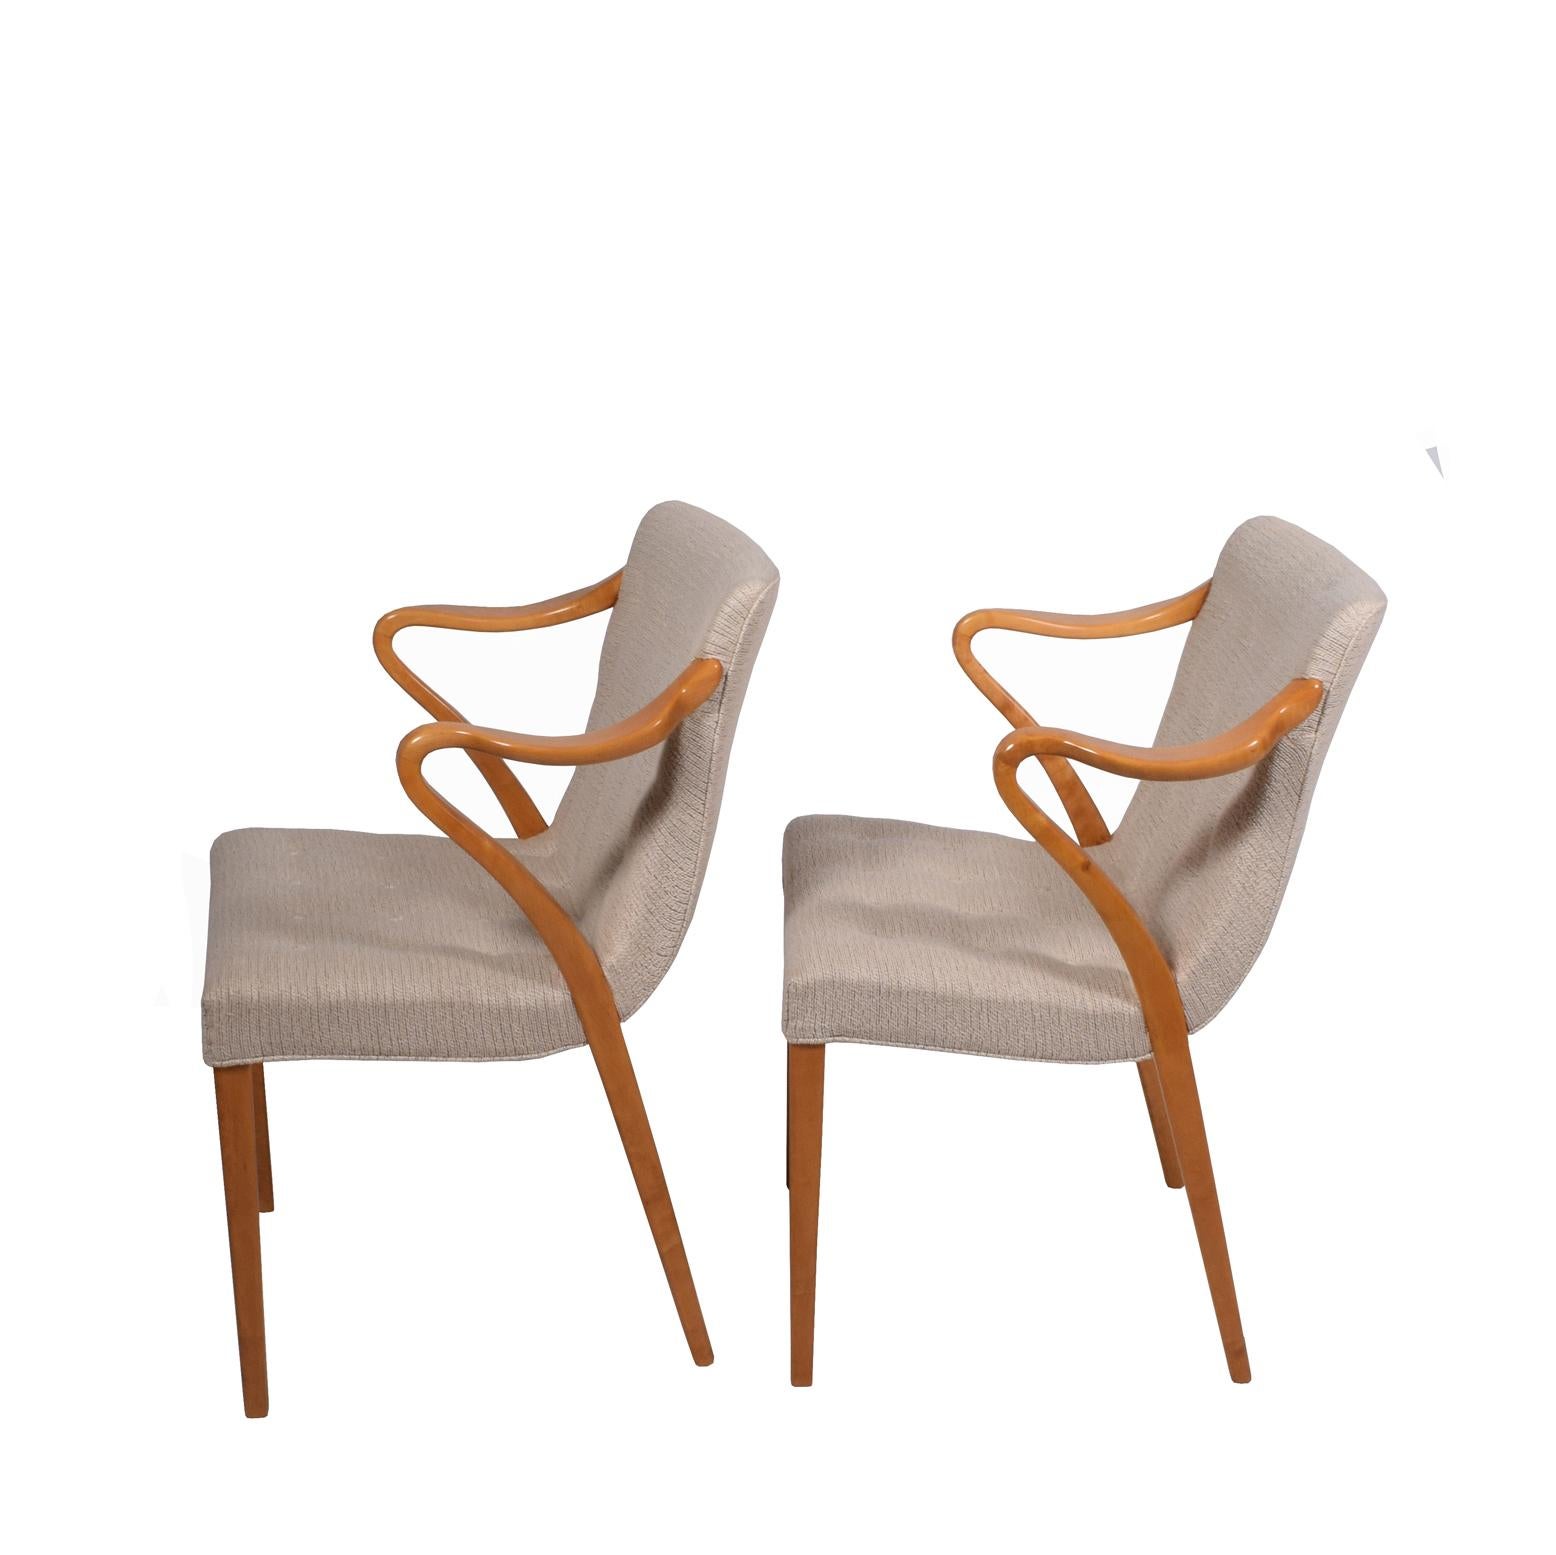 1936 entwirft Axel Larsson eine Gruppe von Möbeln, die seine bekanntesten sind: Sessel aus massivem Birkenholz und Polstermöbel
Maße: Armhöhe 28